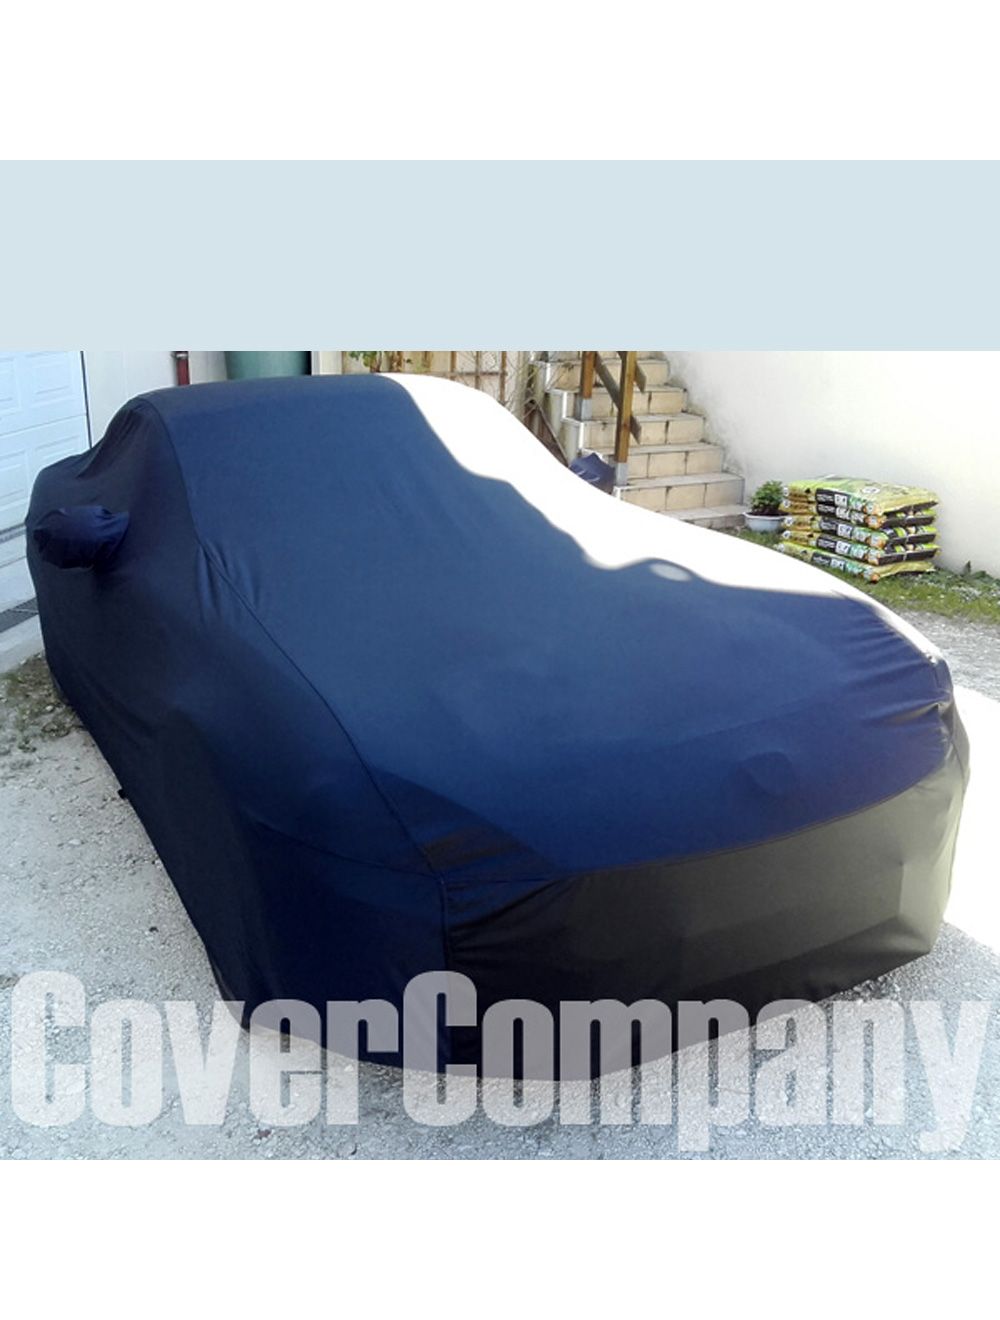 Custom Rainproof Fiat Car Cover - Outdoor Platinum Range